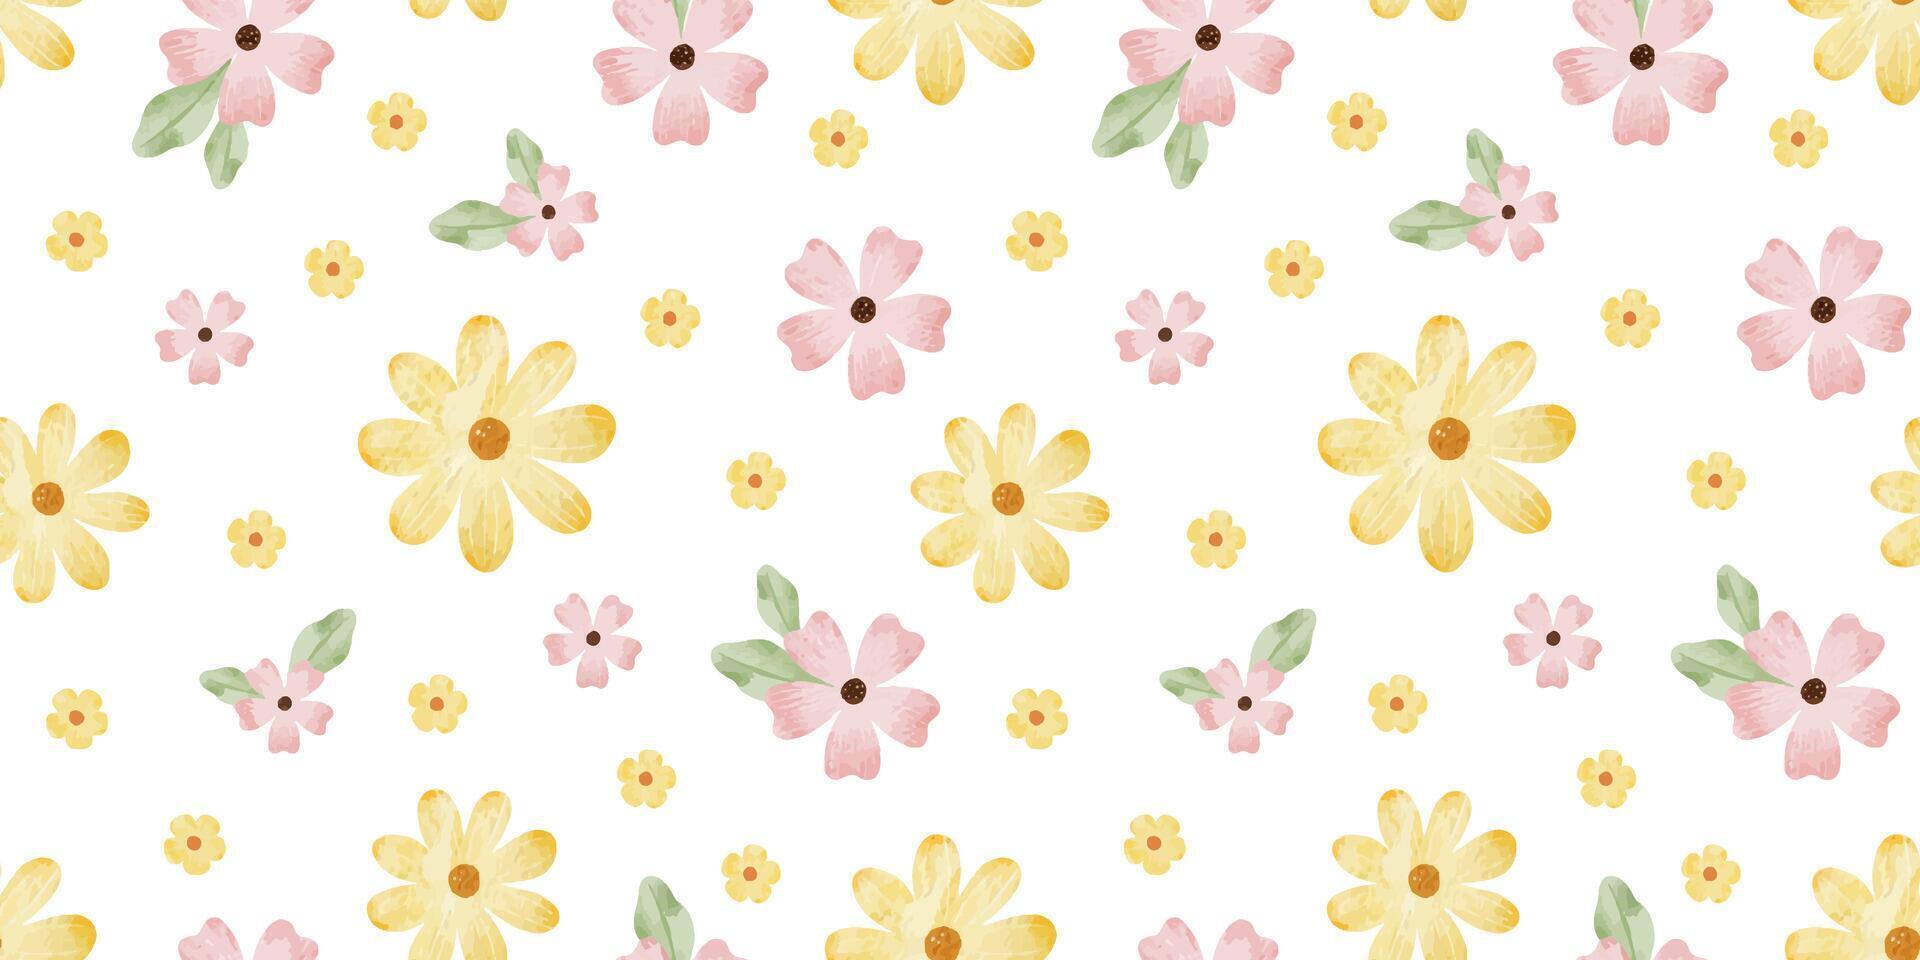 rosa, amarillo flores silvestres y hojas. acuarela mano dibujado sin costura modelo de sencillo flores linda impresión para tela, álbum de recortes, envase papel, diseño de tarjeta vector